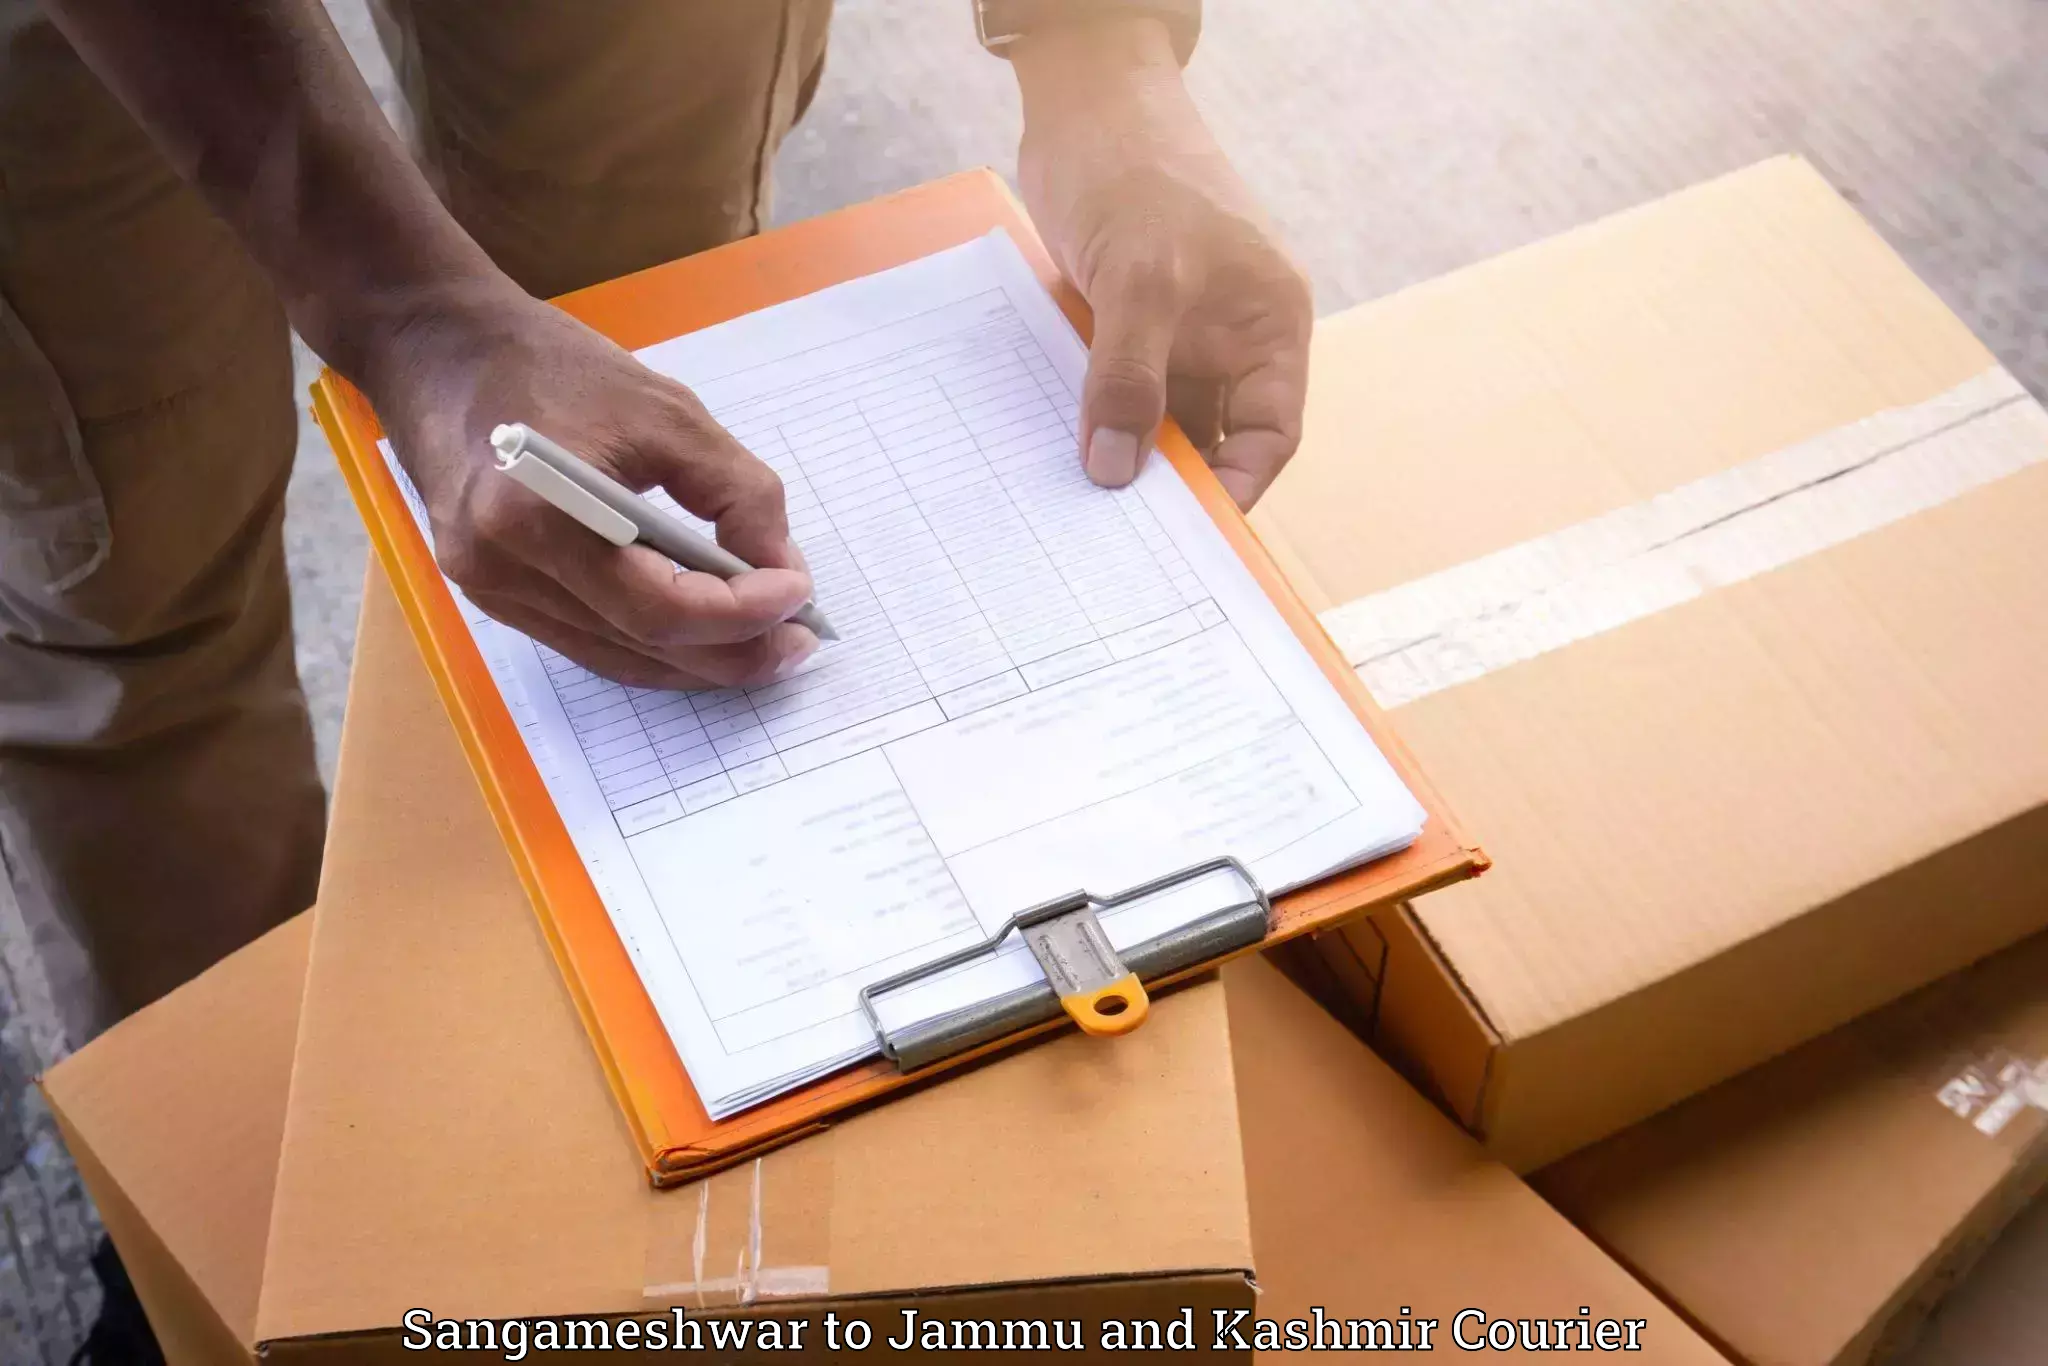 Furniture delivery service Sangameshwar to Billawar